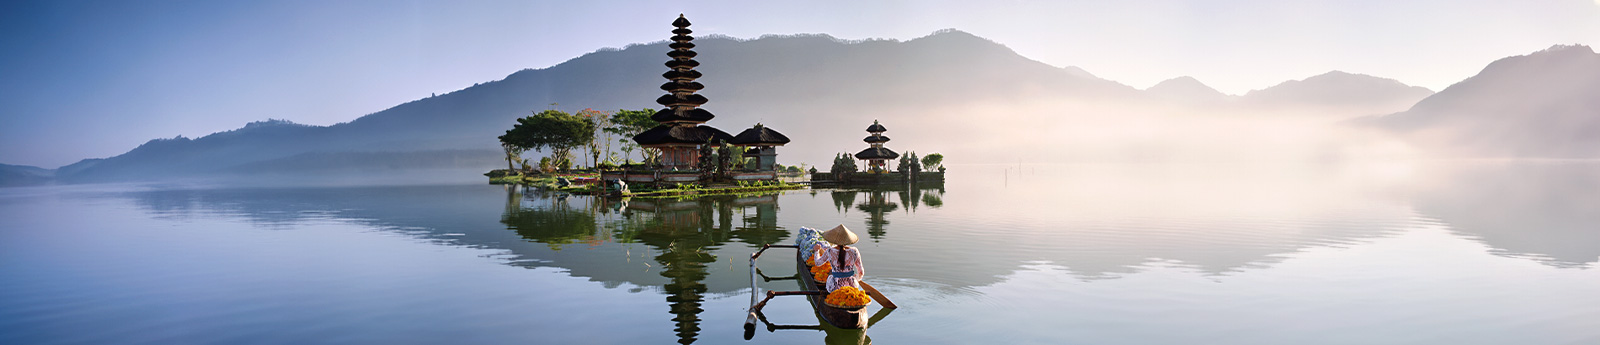 Bali, l’île des dieux